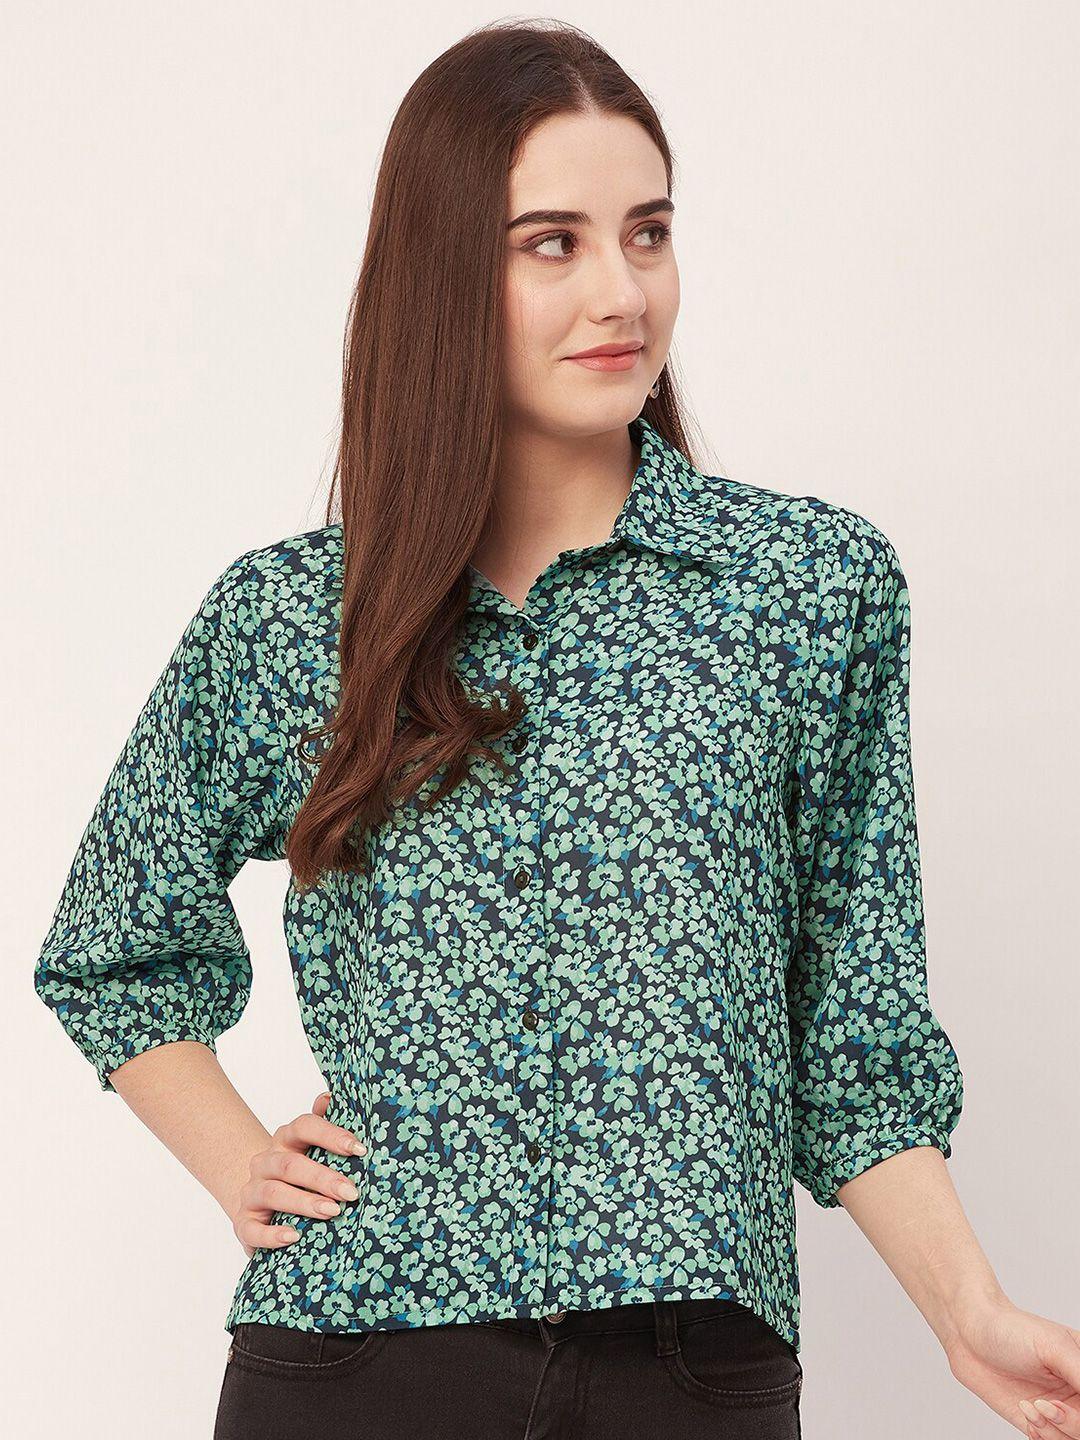 moomaya-floral-printed-casual-shirt